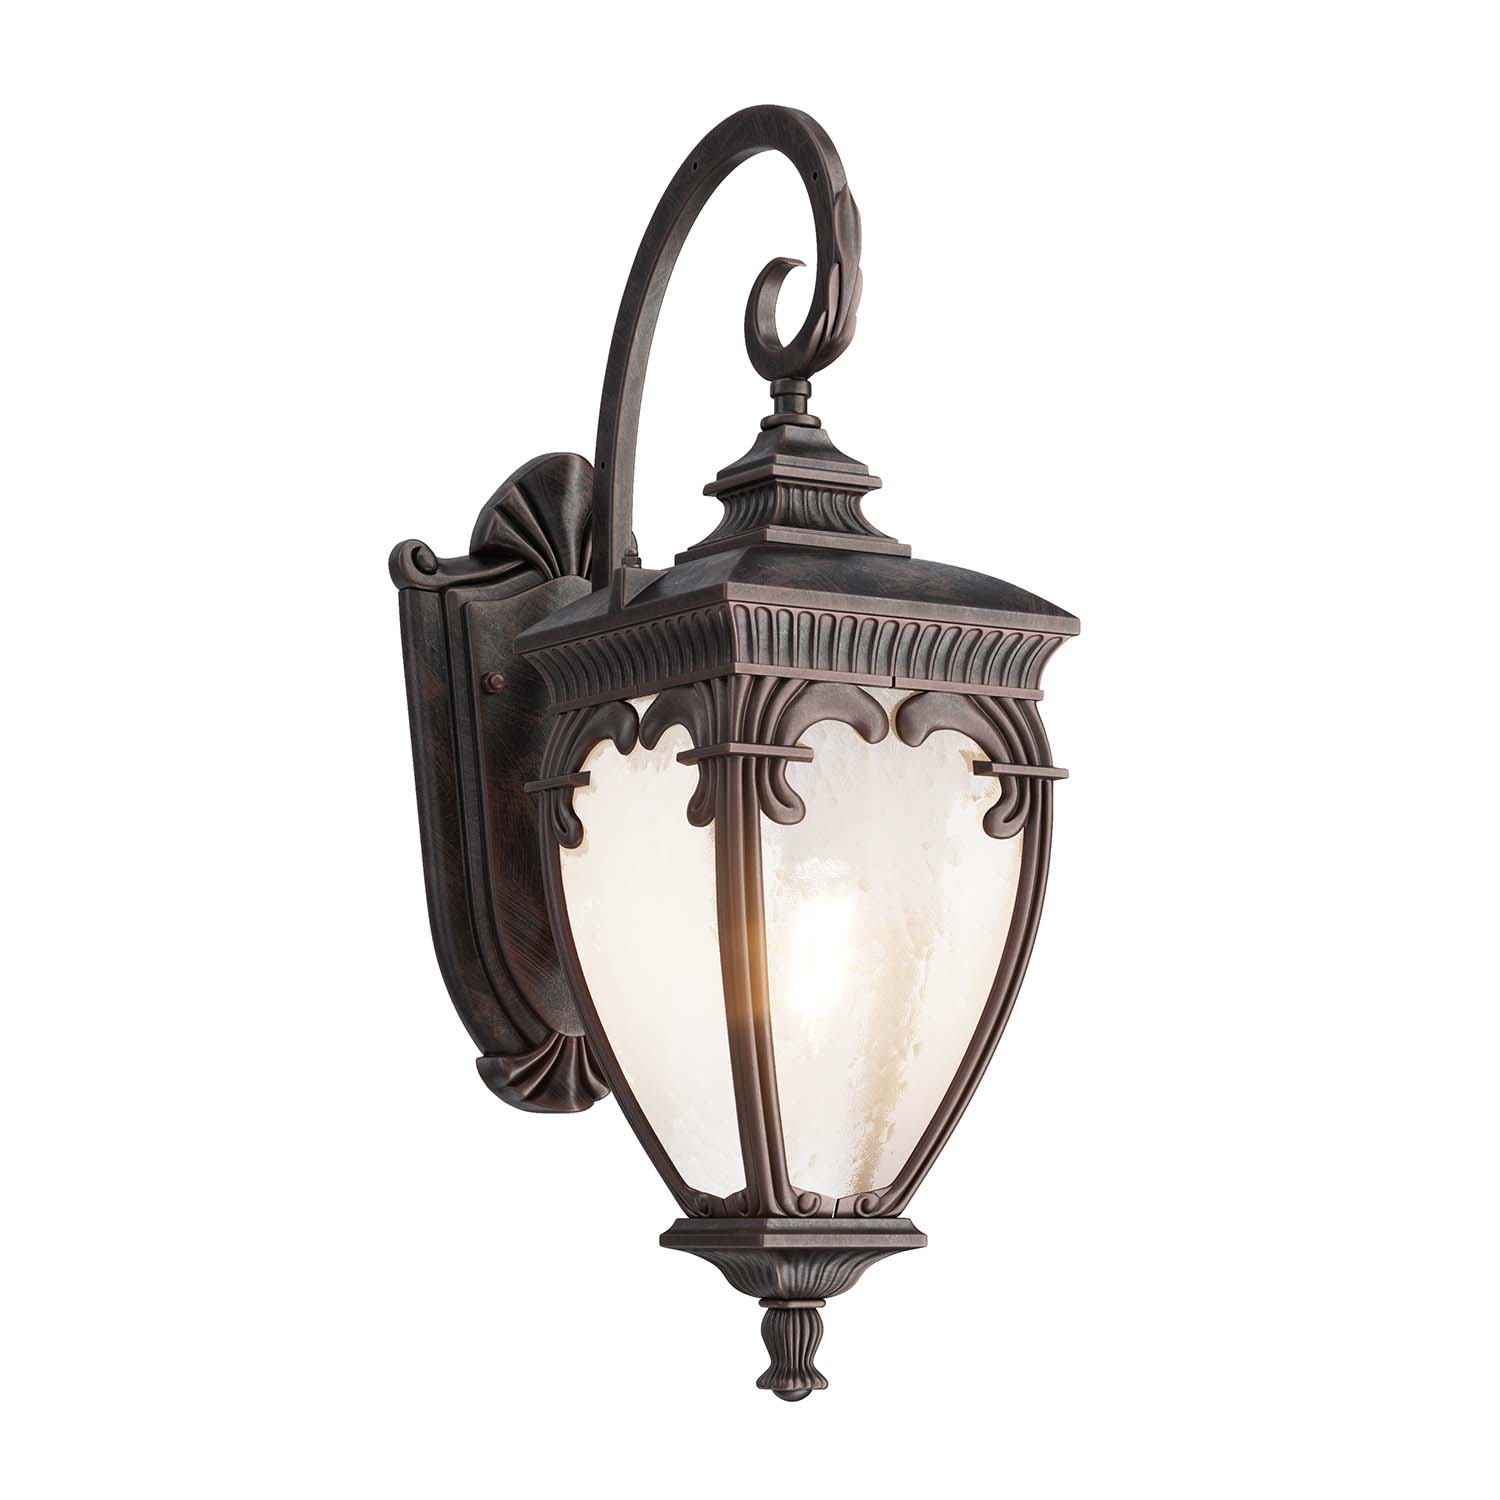 FLEUR - Vintage Italian style outdoor wall light, lantern